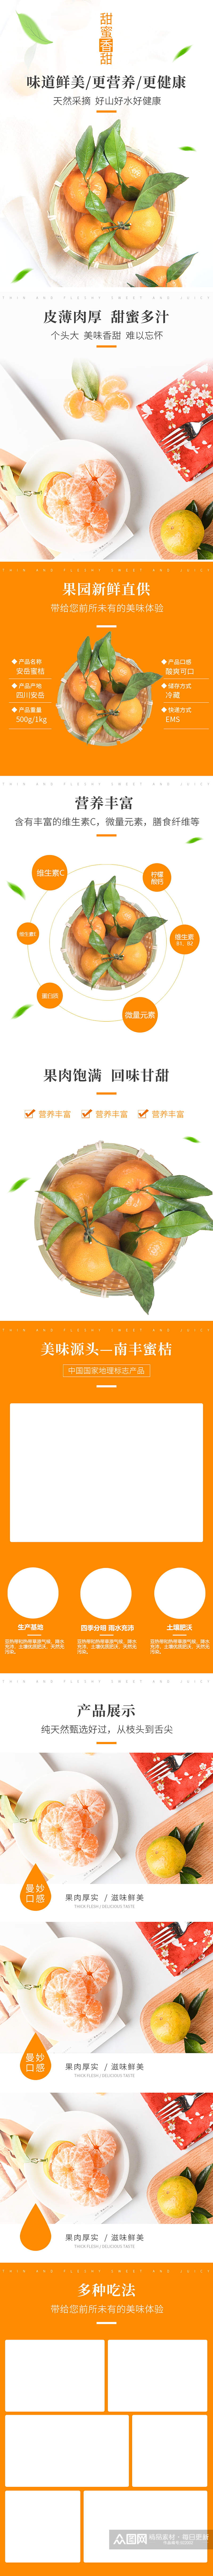 淘宝柑橘子详情页水果详情页素材